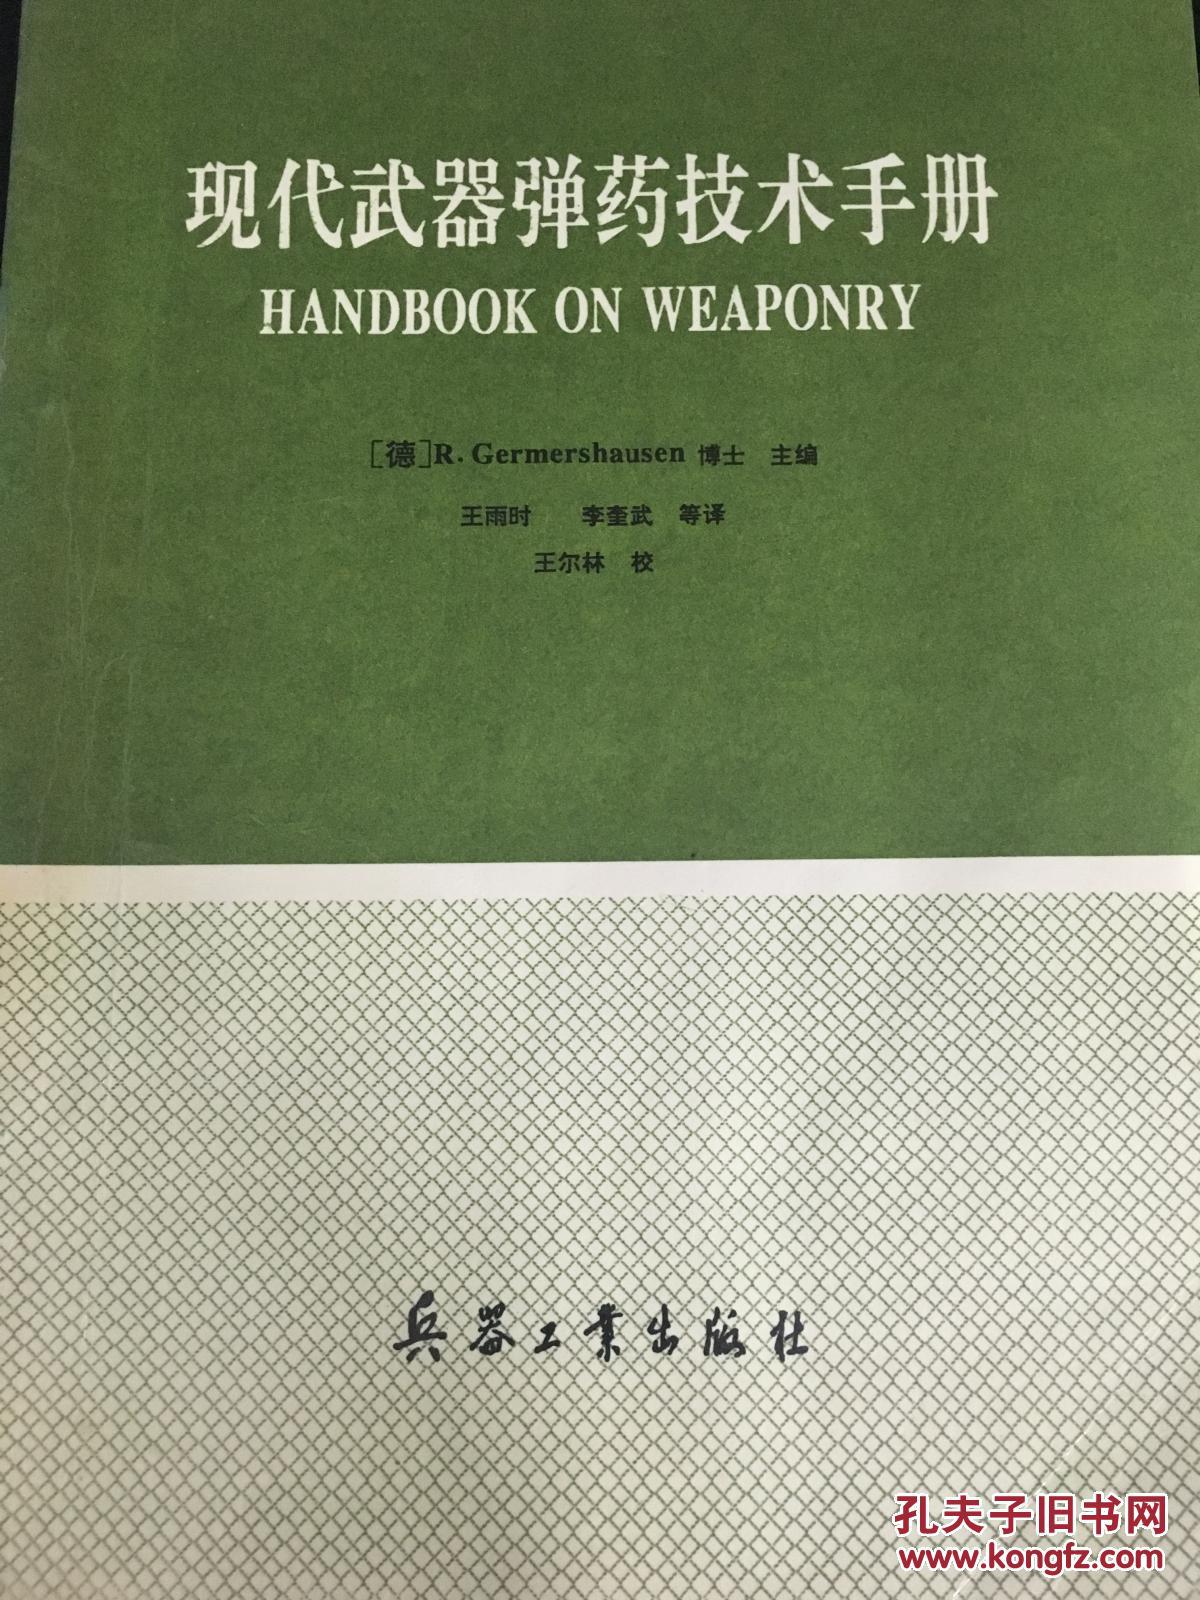 现代武器弹药技术手册